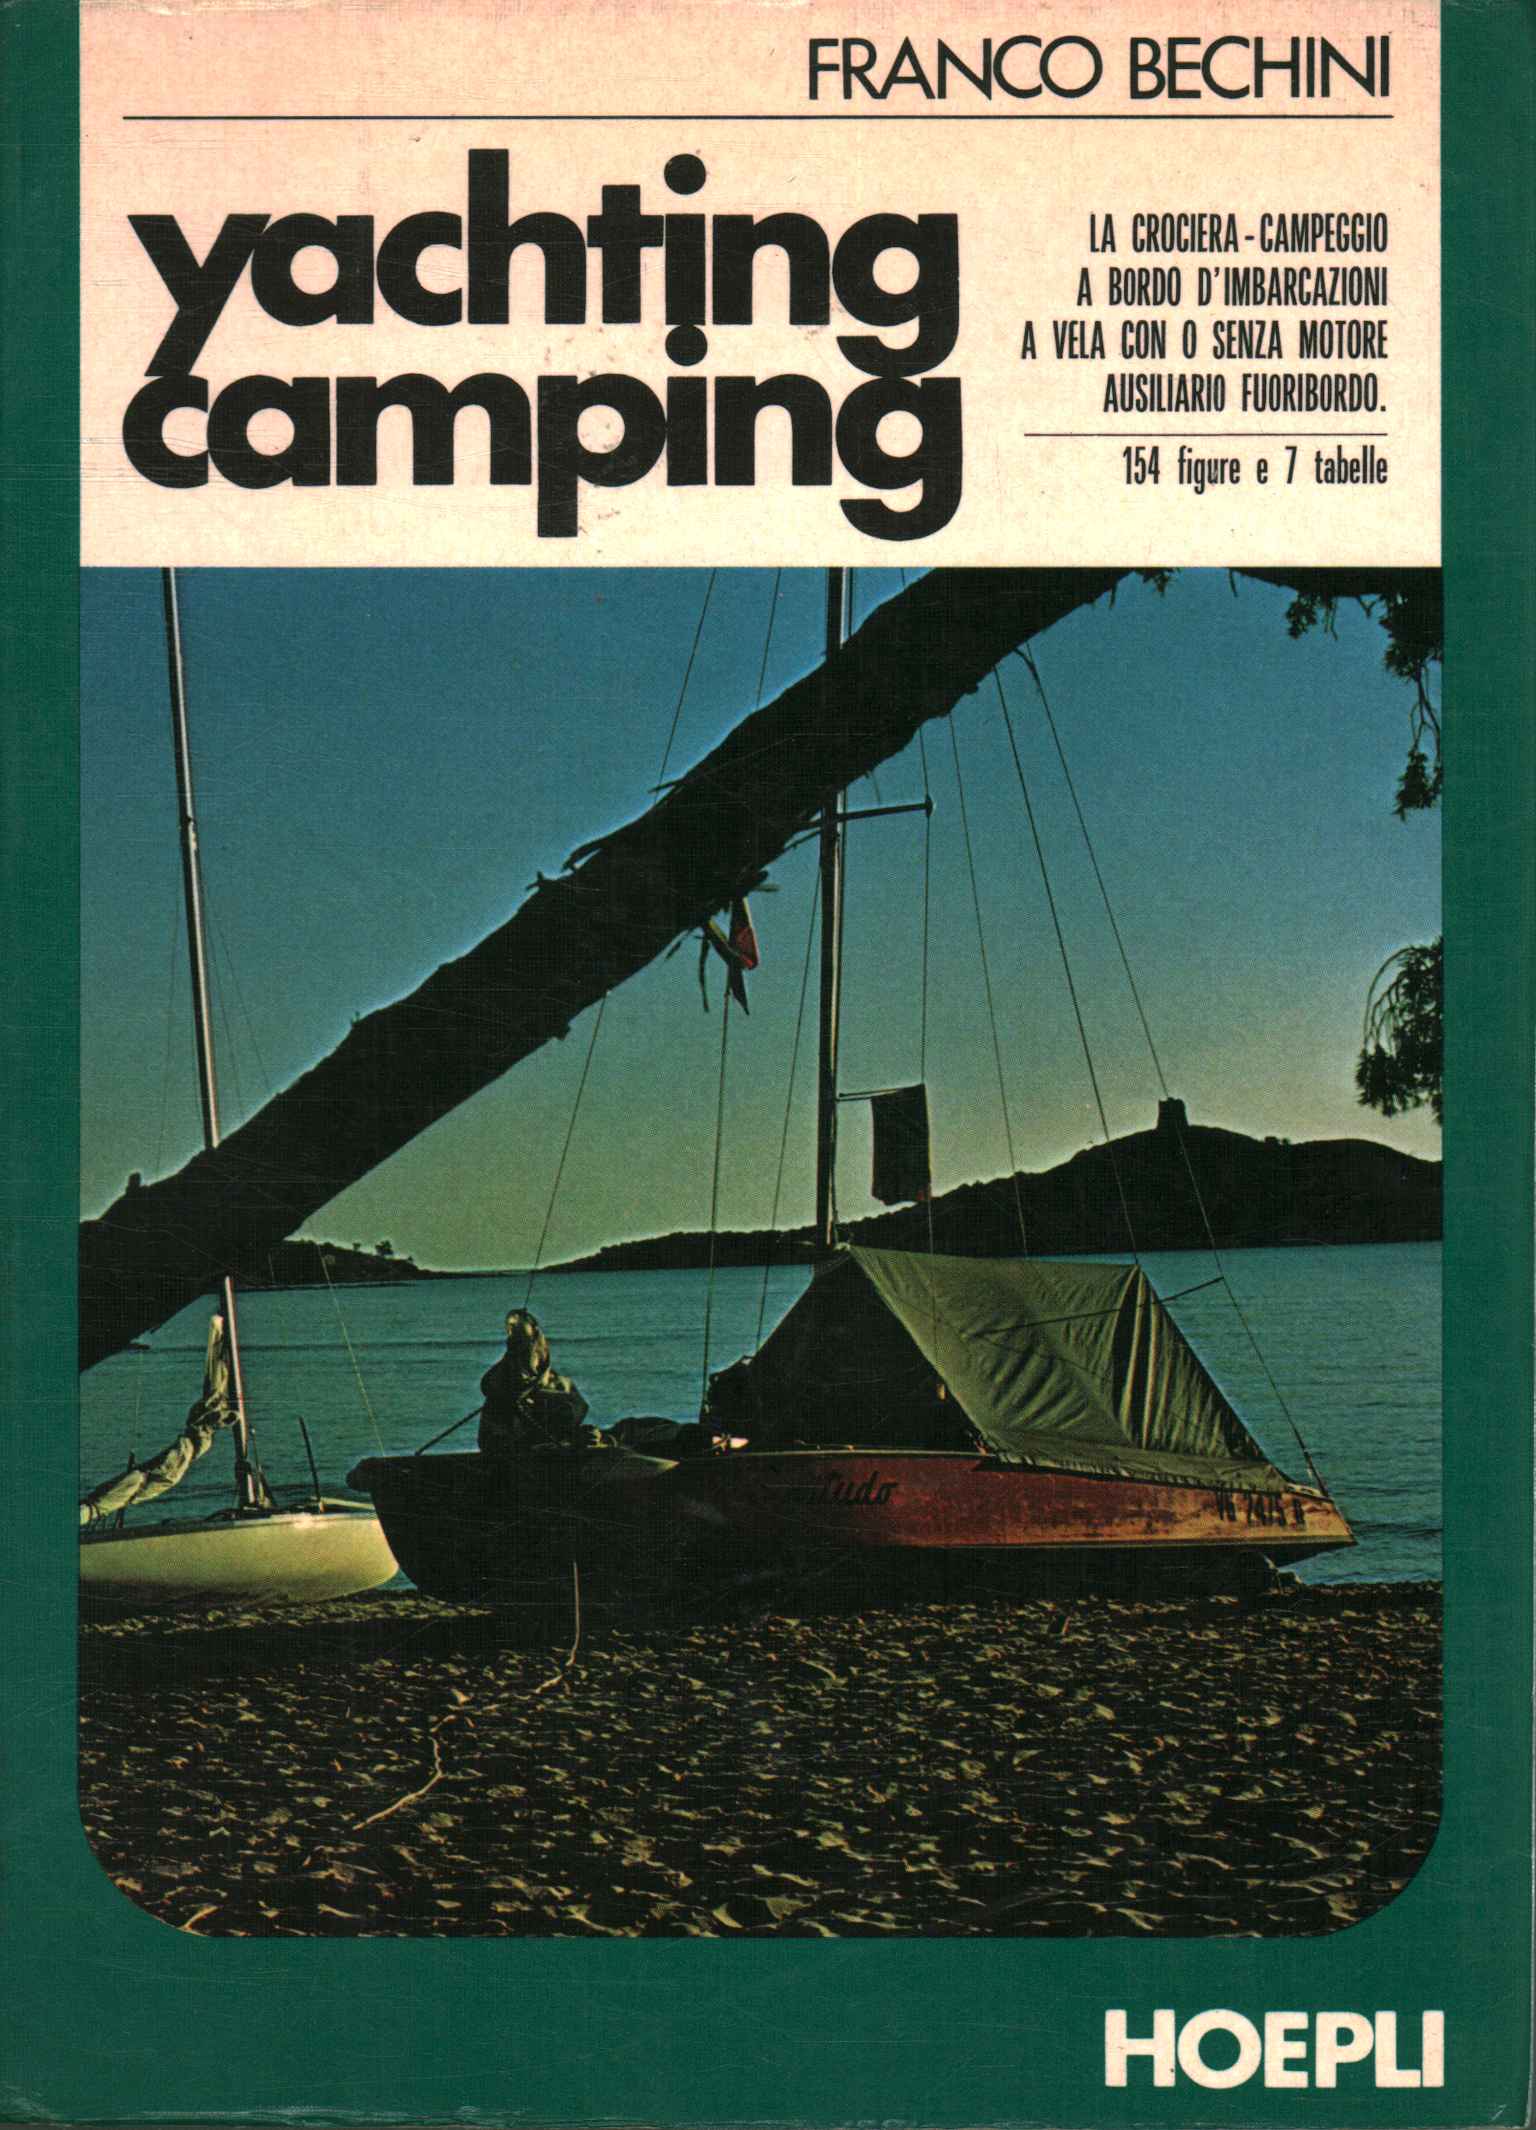 Camping nautique